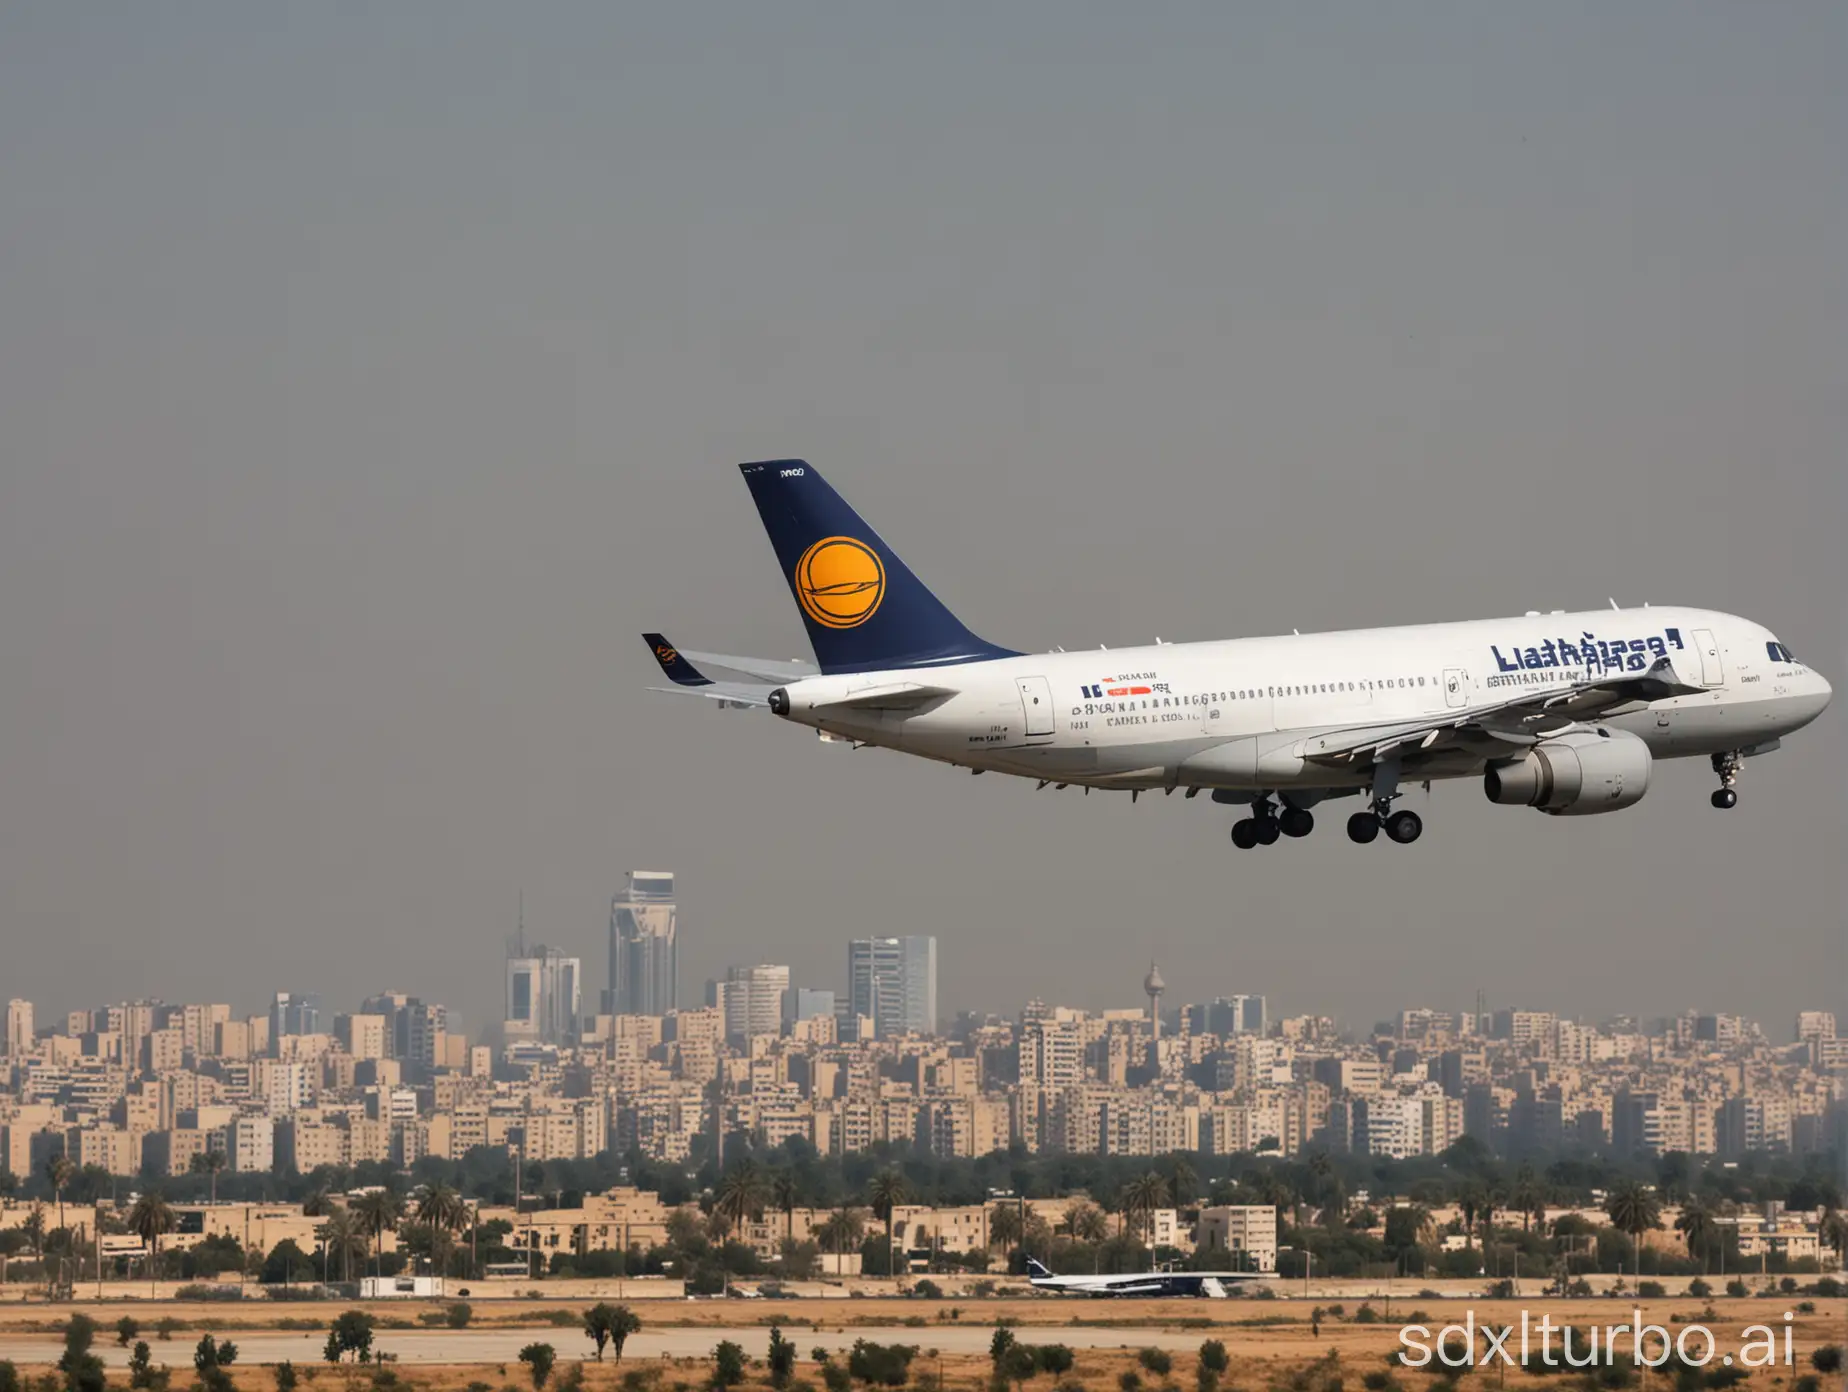 Lufthansa Flugzeug im landeanflug auf den Kairo Flugplatz